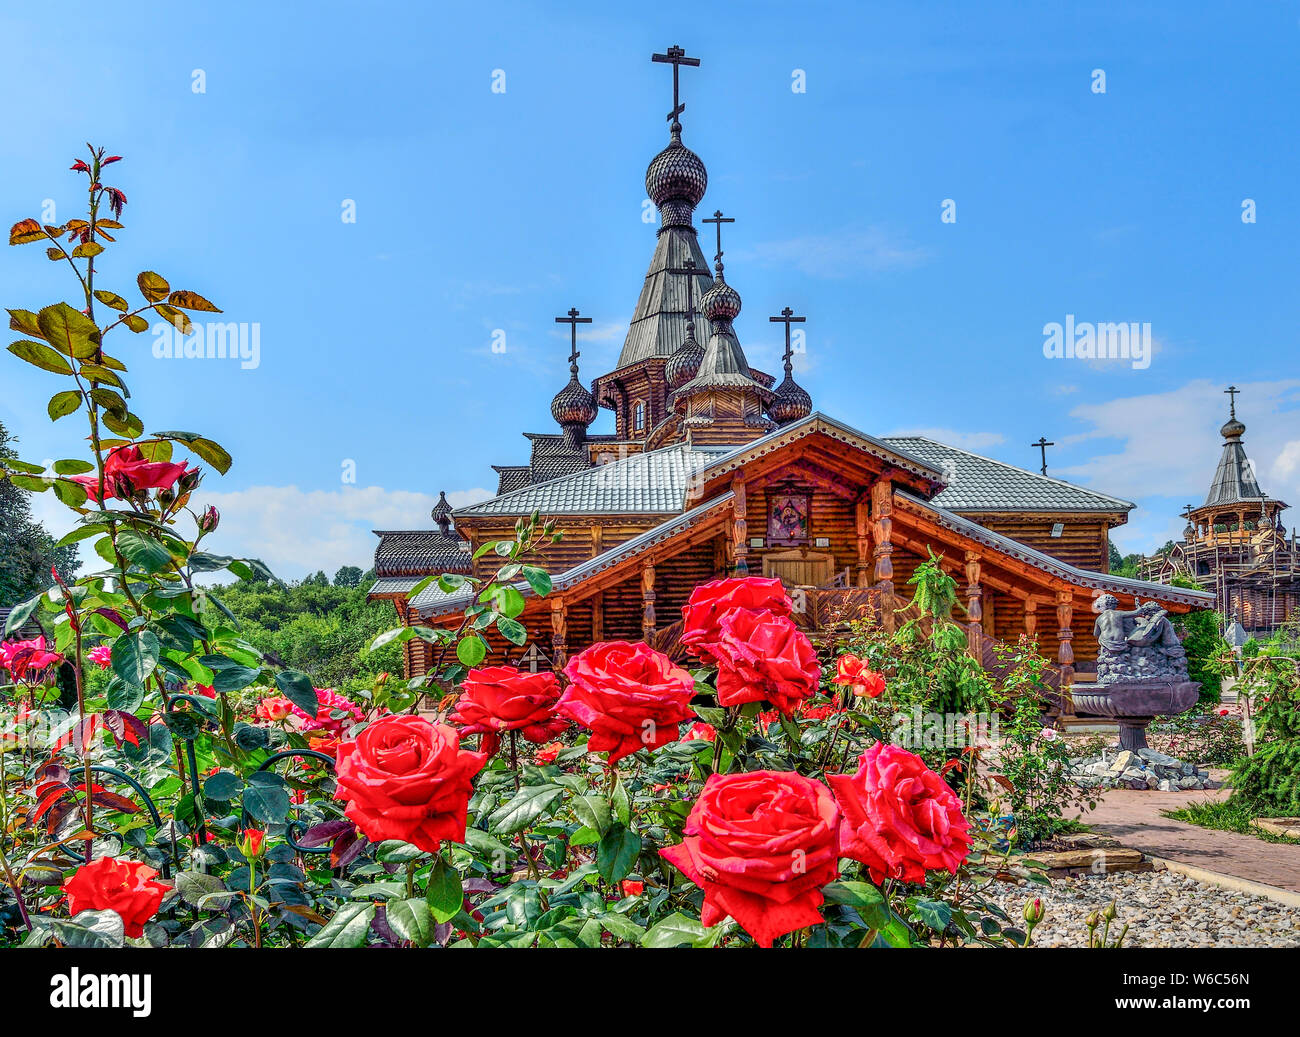 Novokuznetsk, Russland - Juli 29, 2019: Rosengarten im Vorgarten der christlichen Tempel des Heiligen Märtyrer Johannes der Krieger in Novokuznetsk, Russland. Glückseligkeit Stockfoto